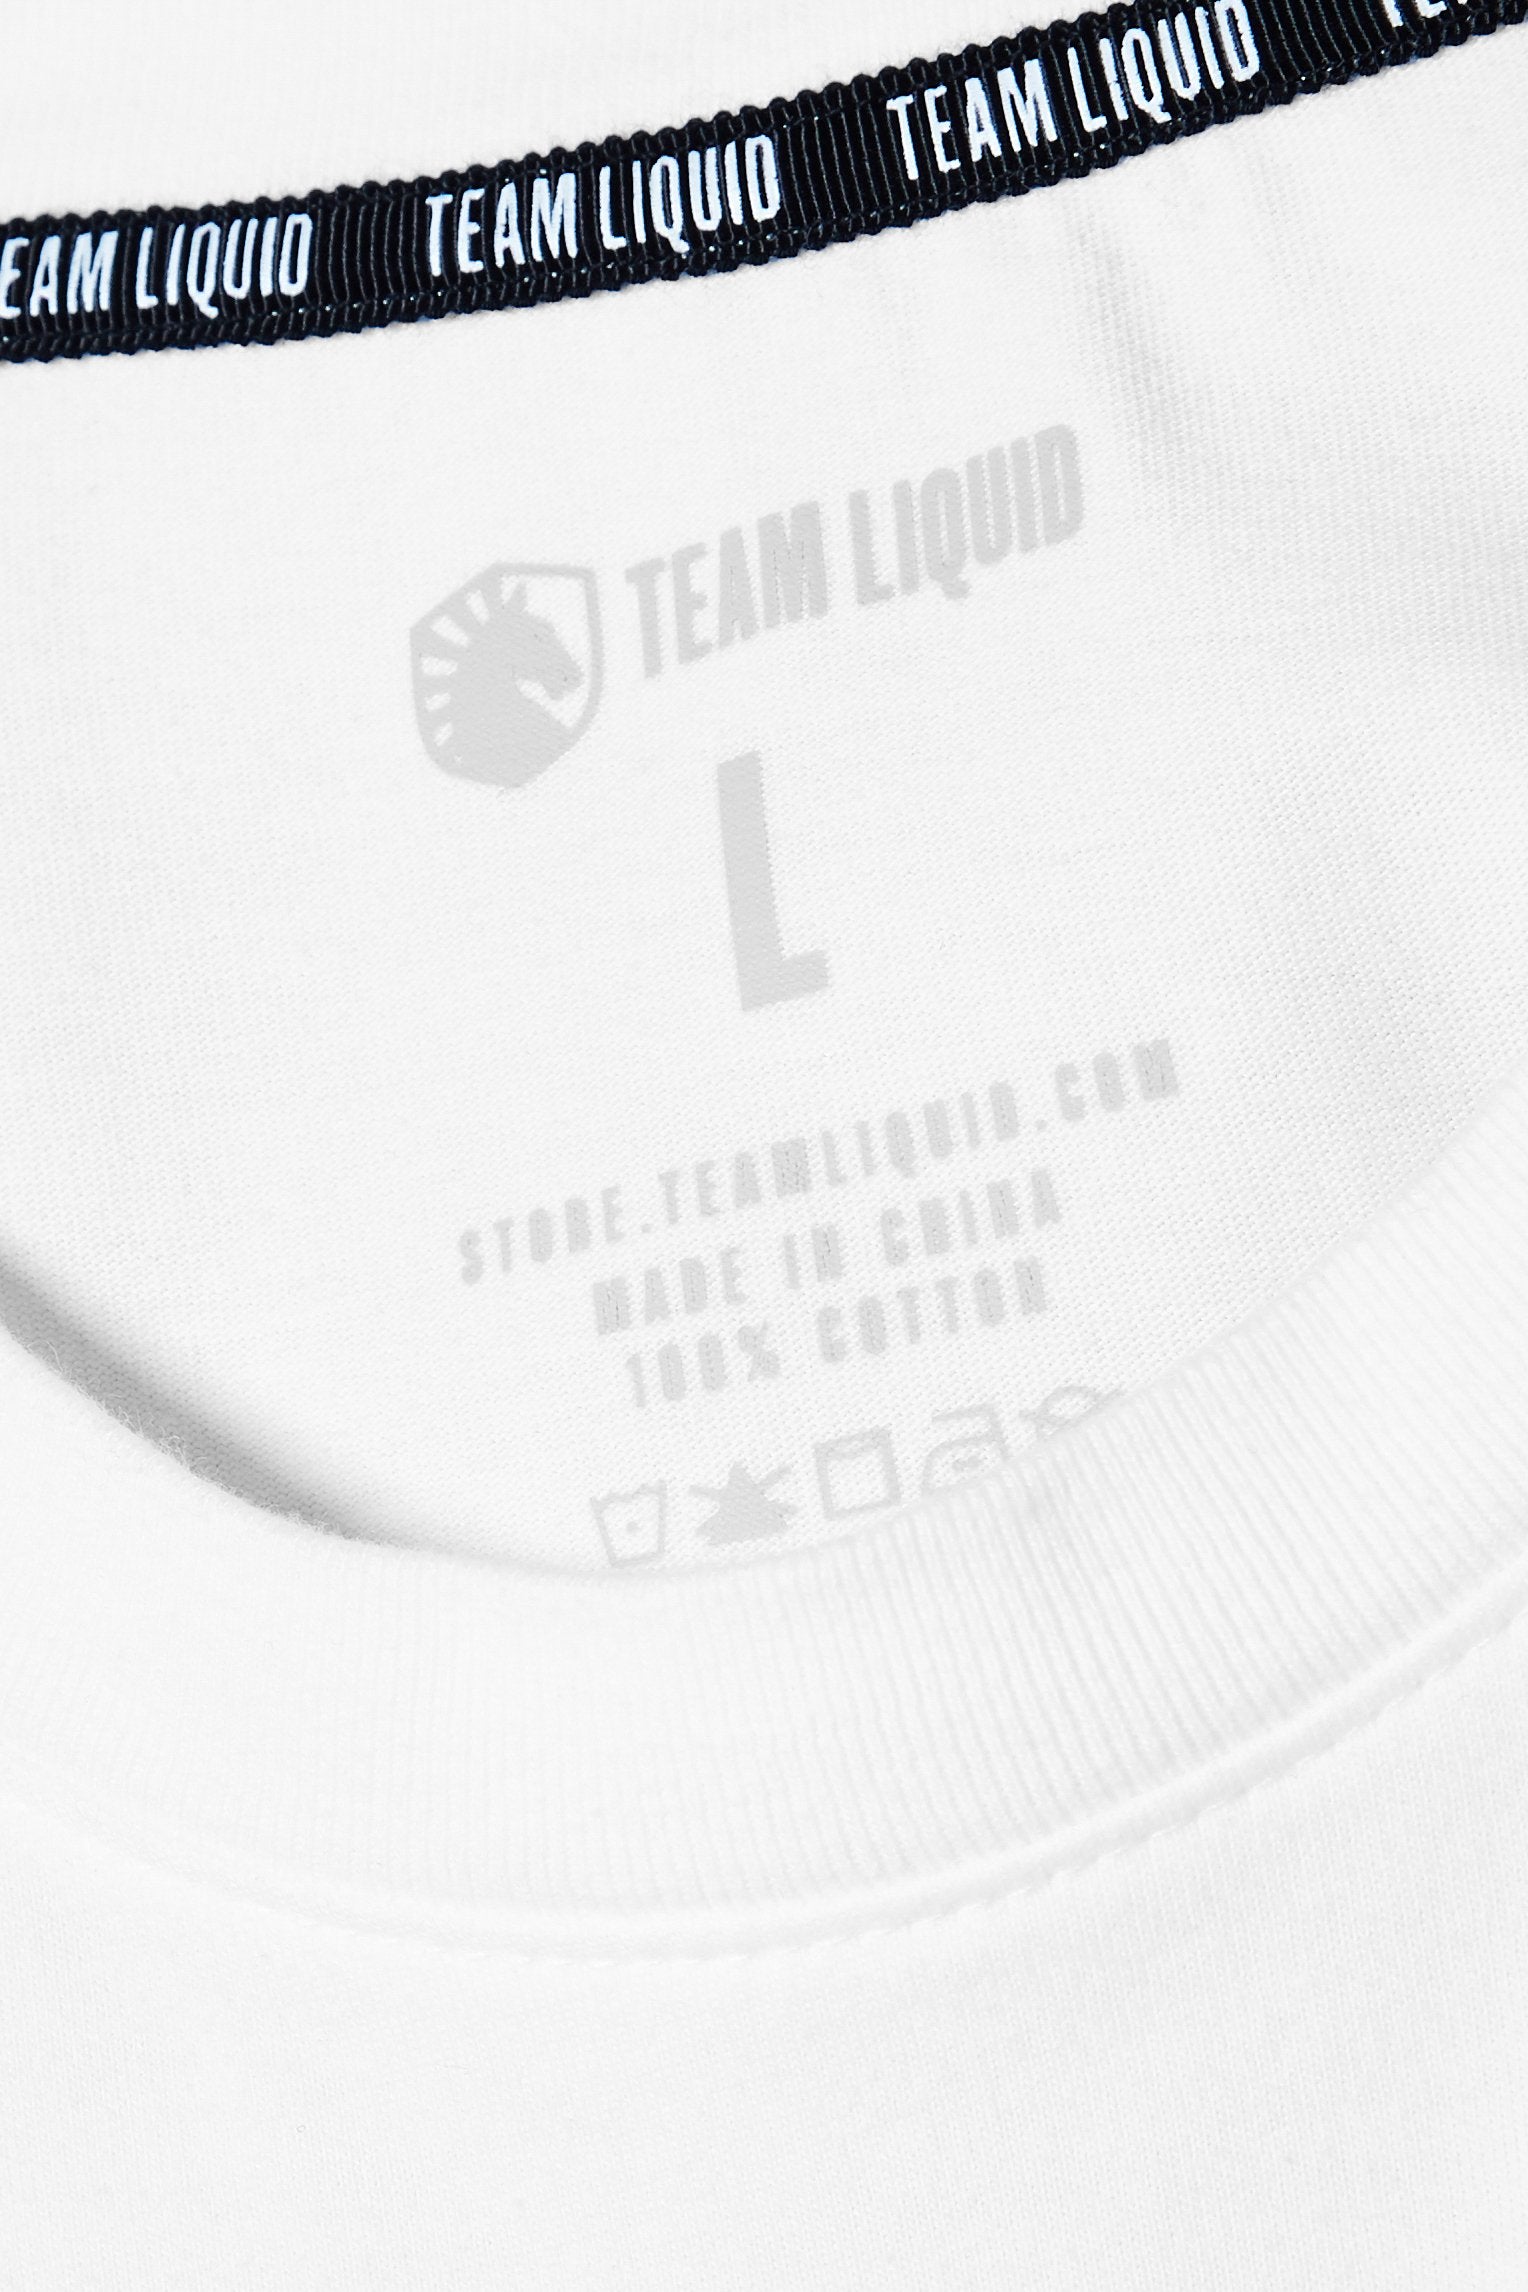 LVTH-N R.O.D SHORT SLEEVE TEE - Team Liquid